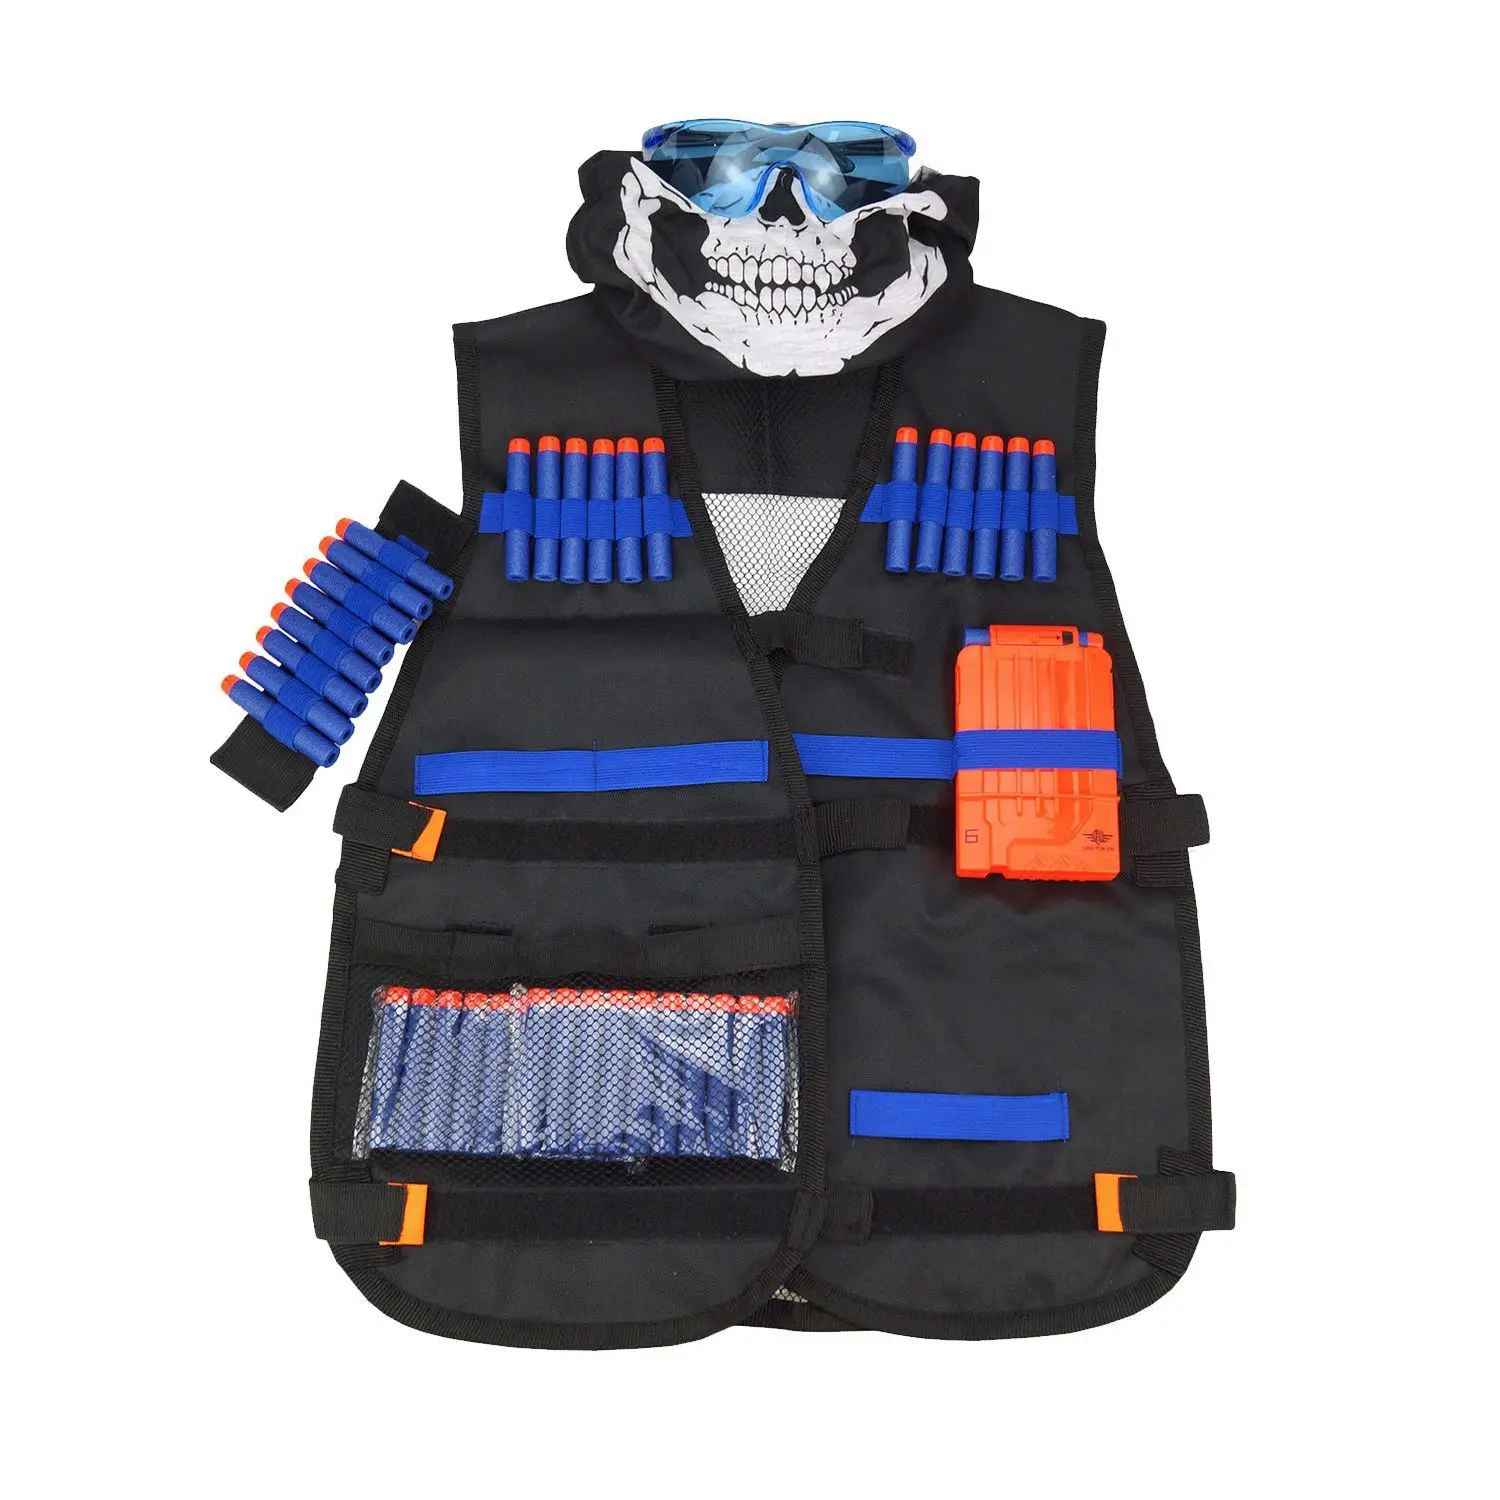 ChildrenBlack аксессуары для тактического оружия жилет куртка жилет патроны держатель N-страйк Элит пистолет игрушечный снаряд Дартс на липучках